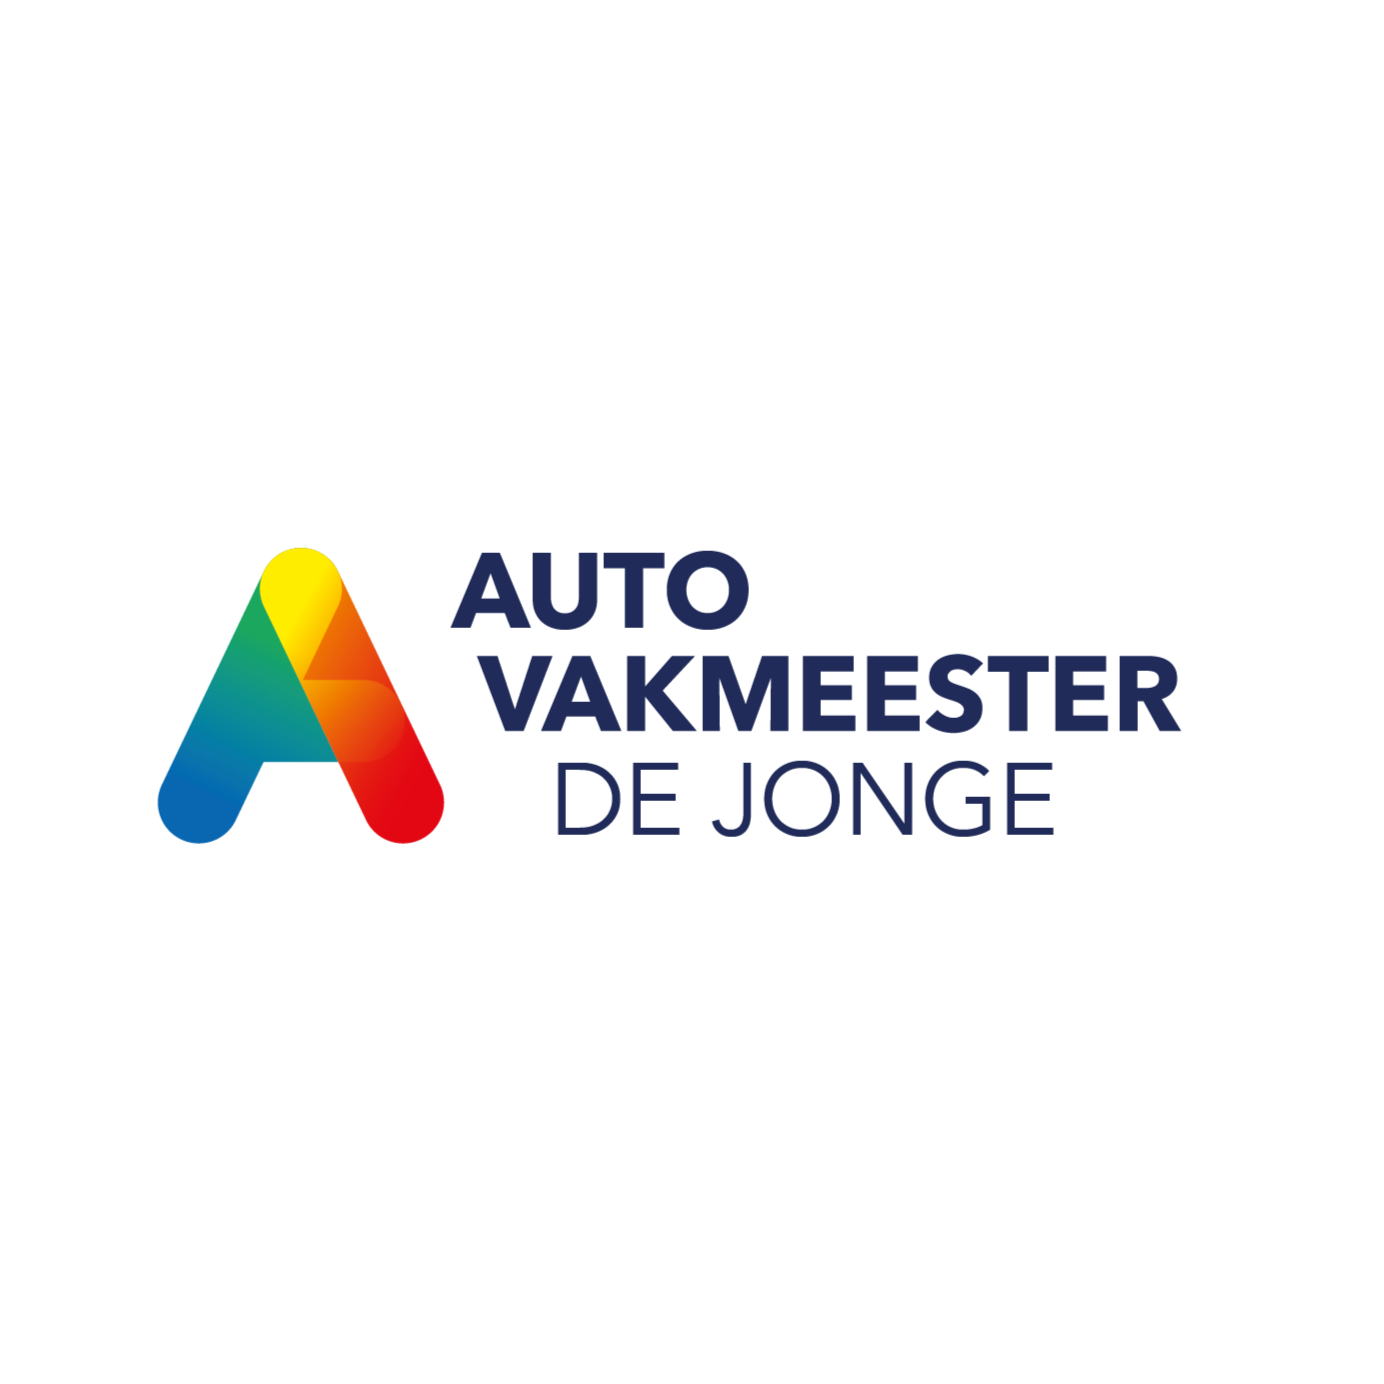 Autovakmeester De Jonge Logo